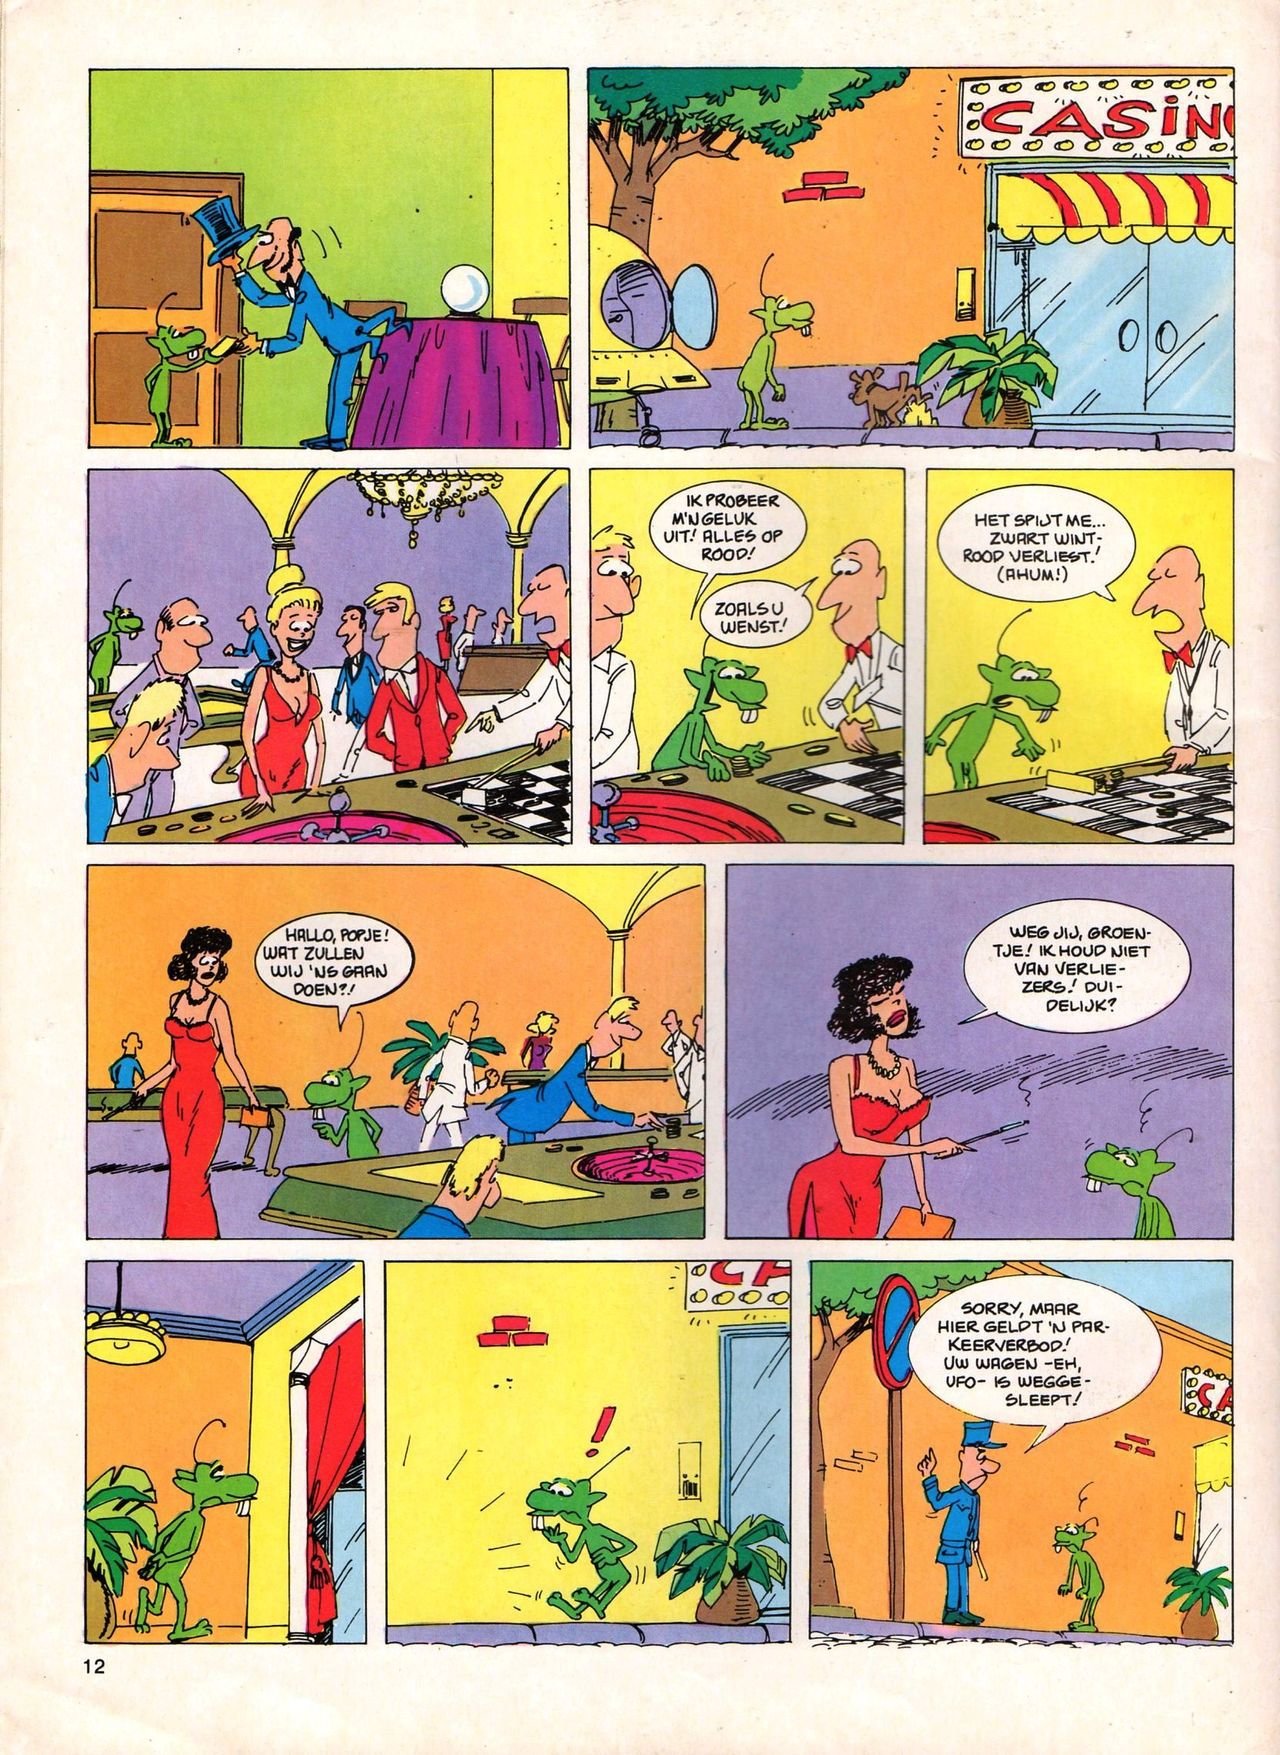 Het Is Groen En Het.. - 04 - Mag Ik Die Ballen.. OH, PARDON! (Dutch) Een oude humoristische serie van Pat Mallet 12